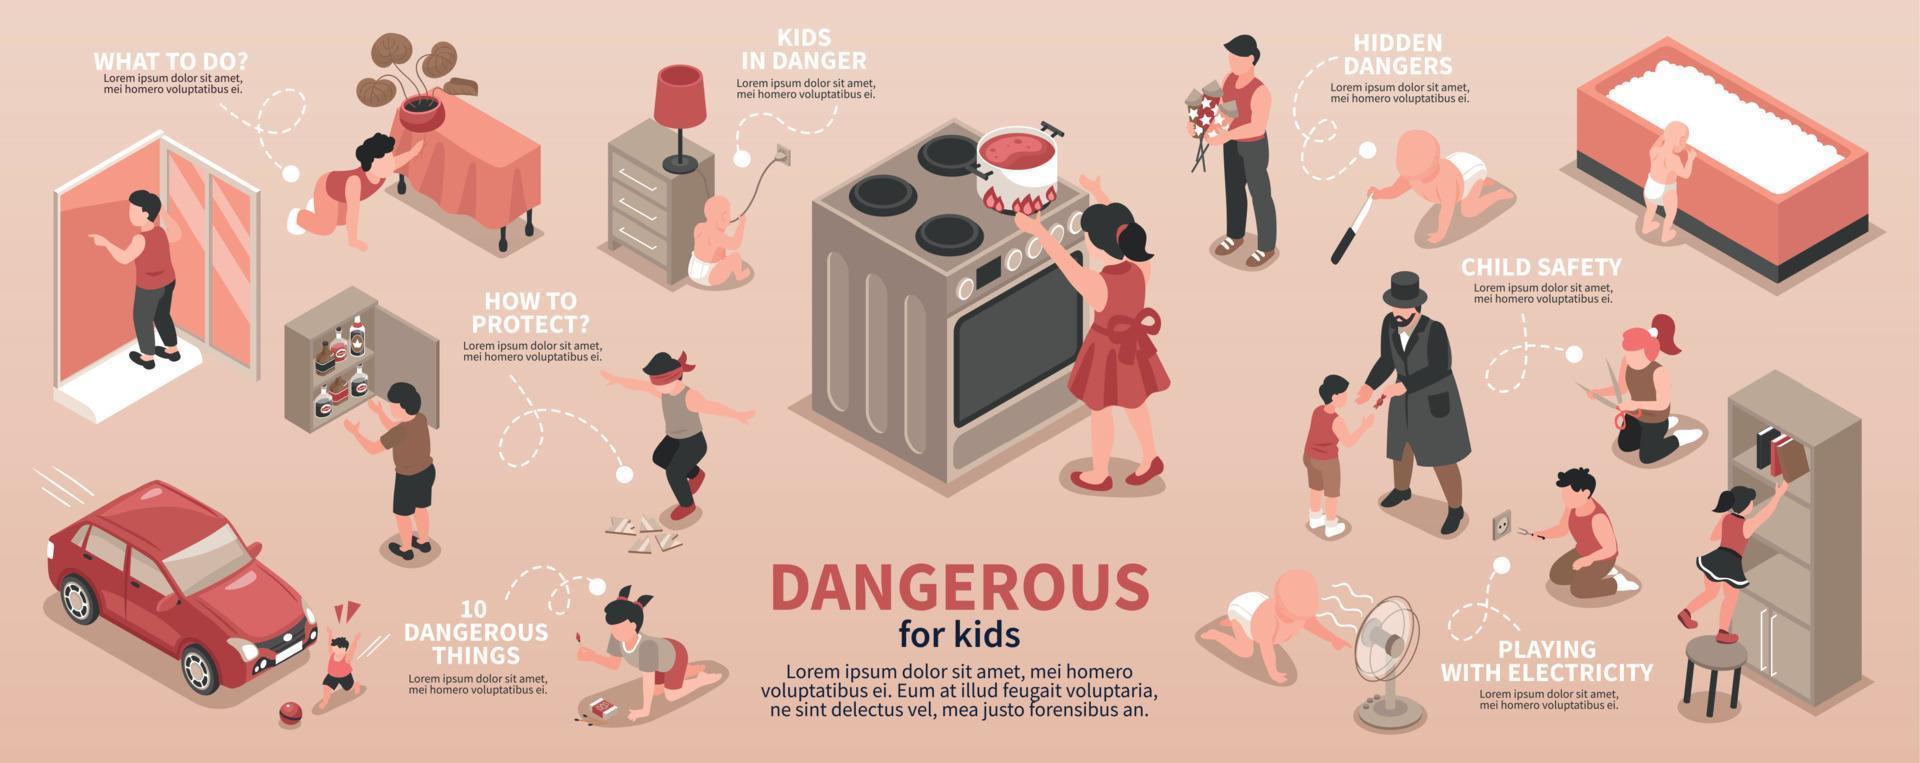 infografia de situaciones peligrosas para niños vector